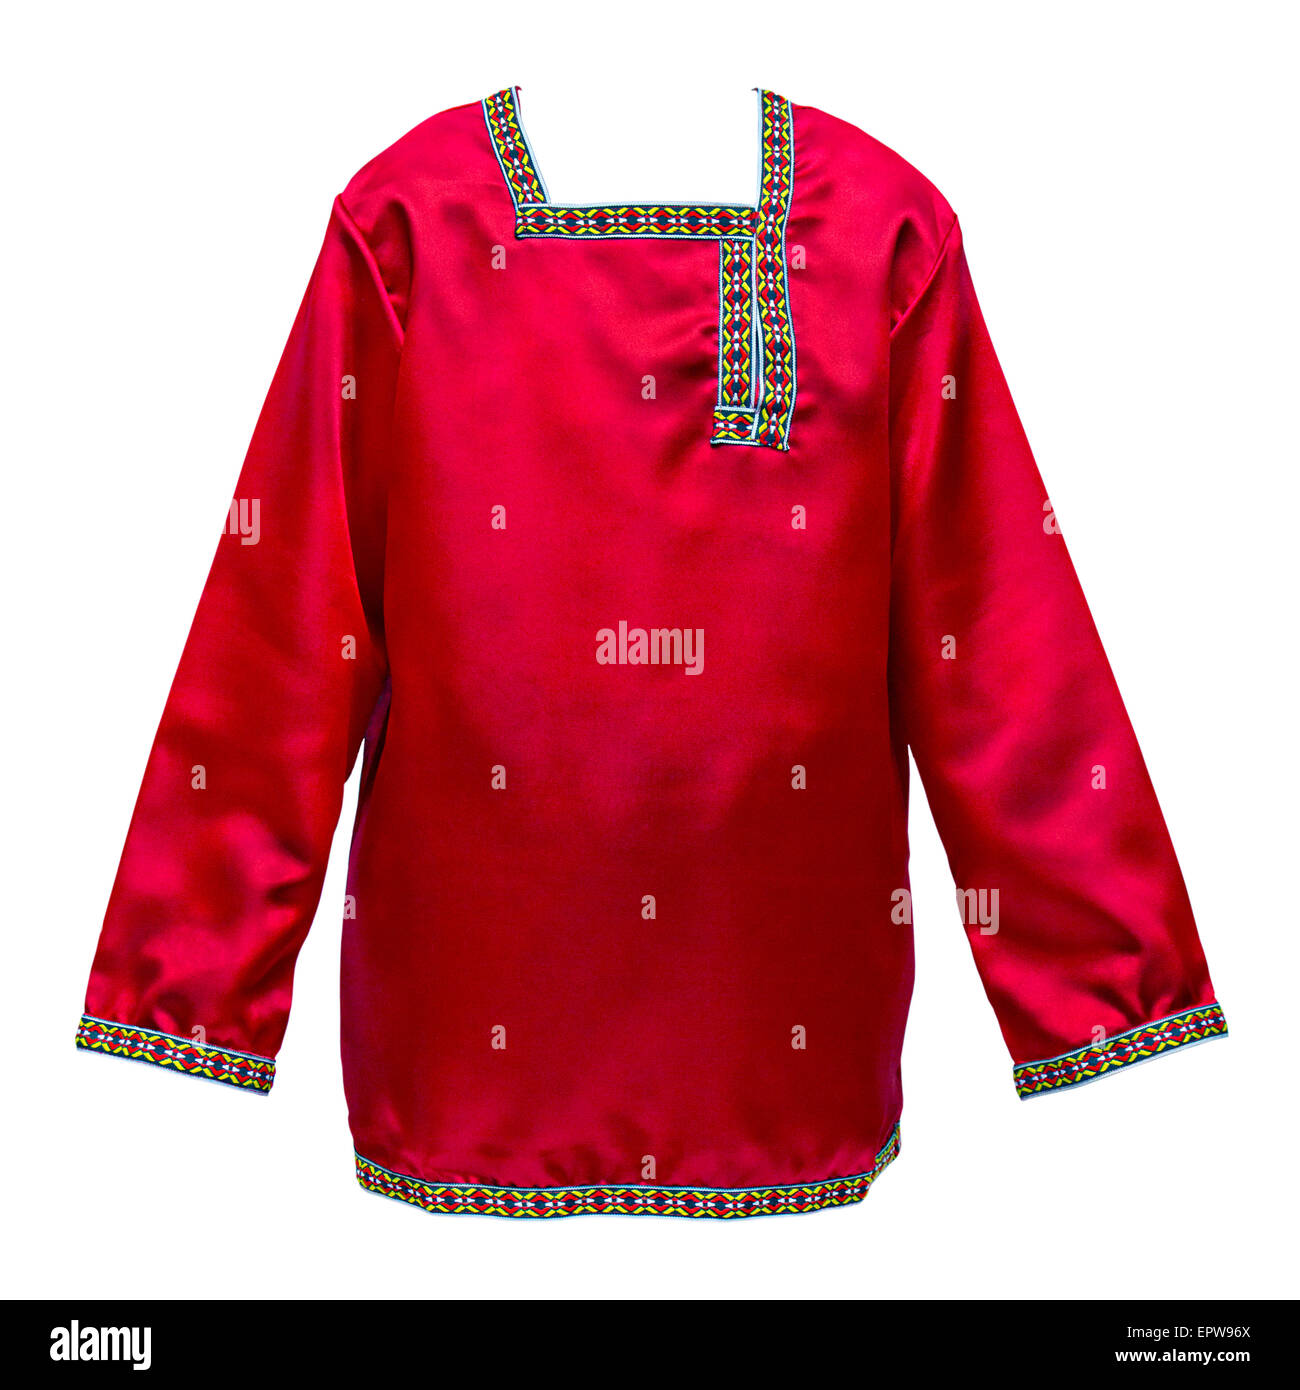 Rosso nazionale russa shirt con ricami a motivi geometrici isolati su sfondo bianco Foto Stock